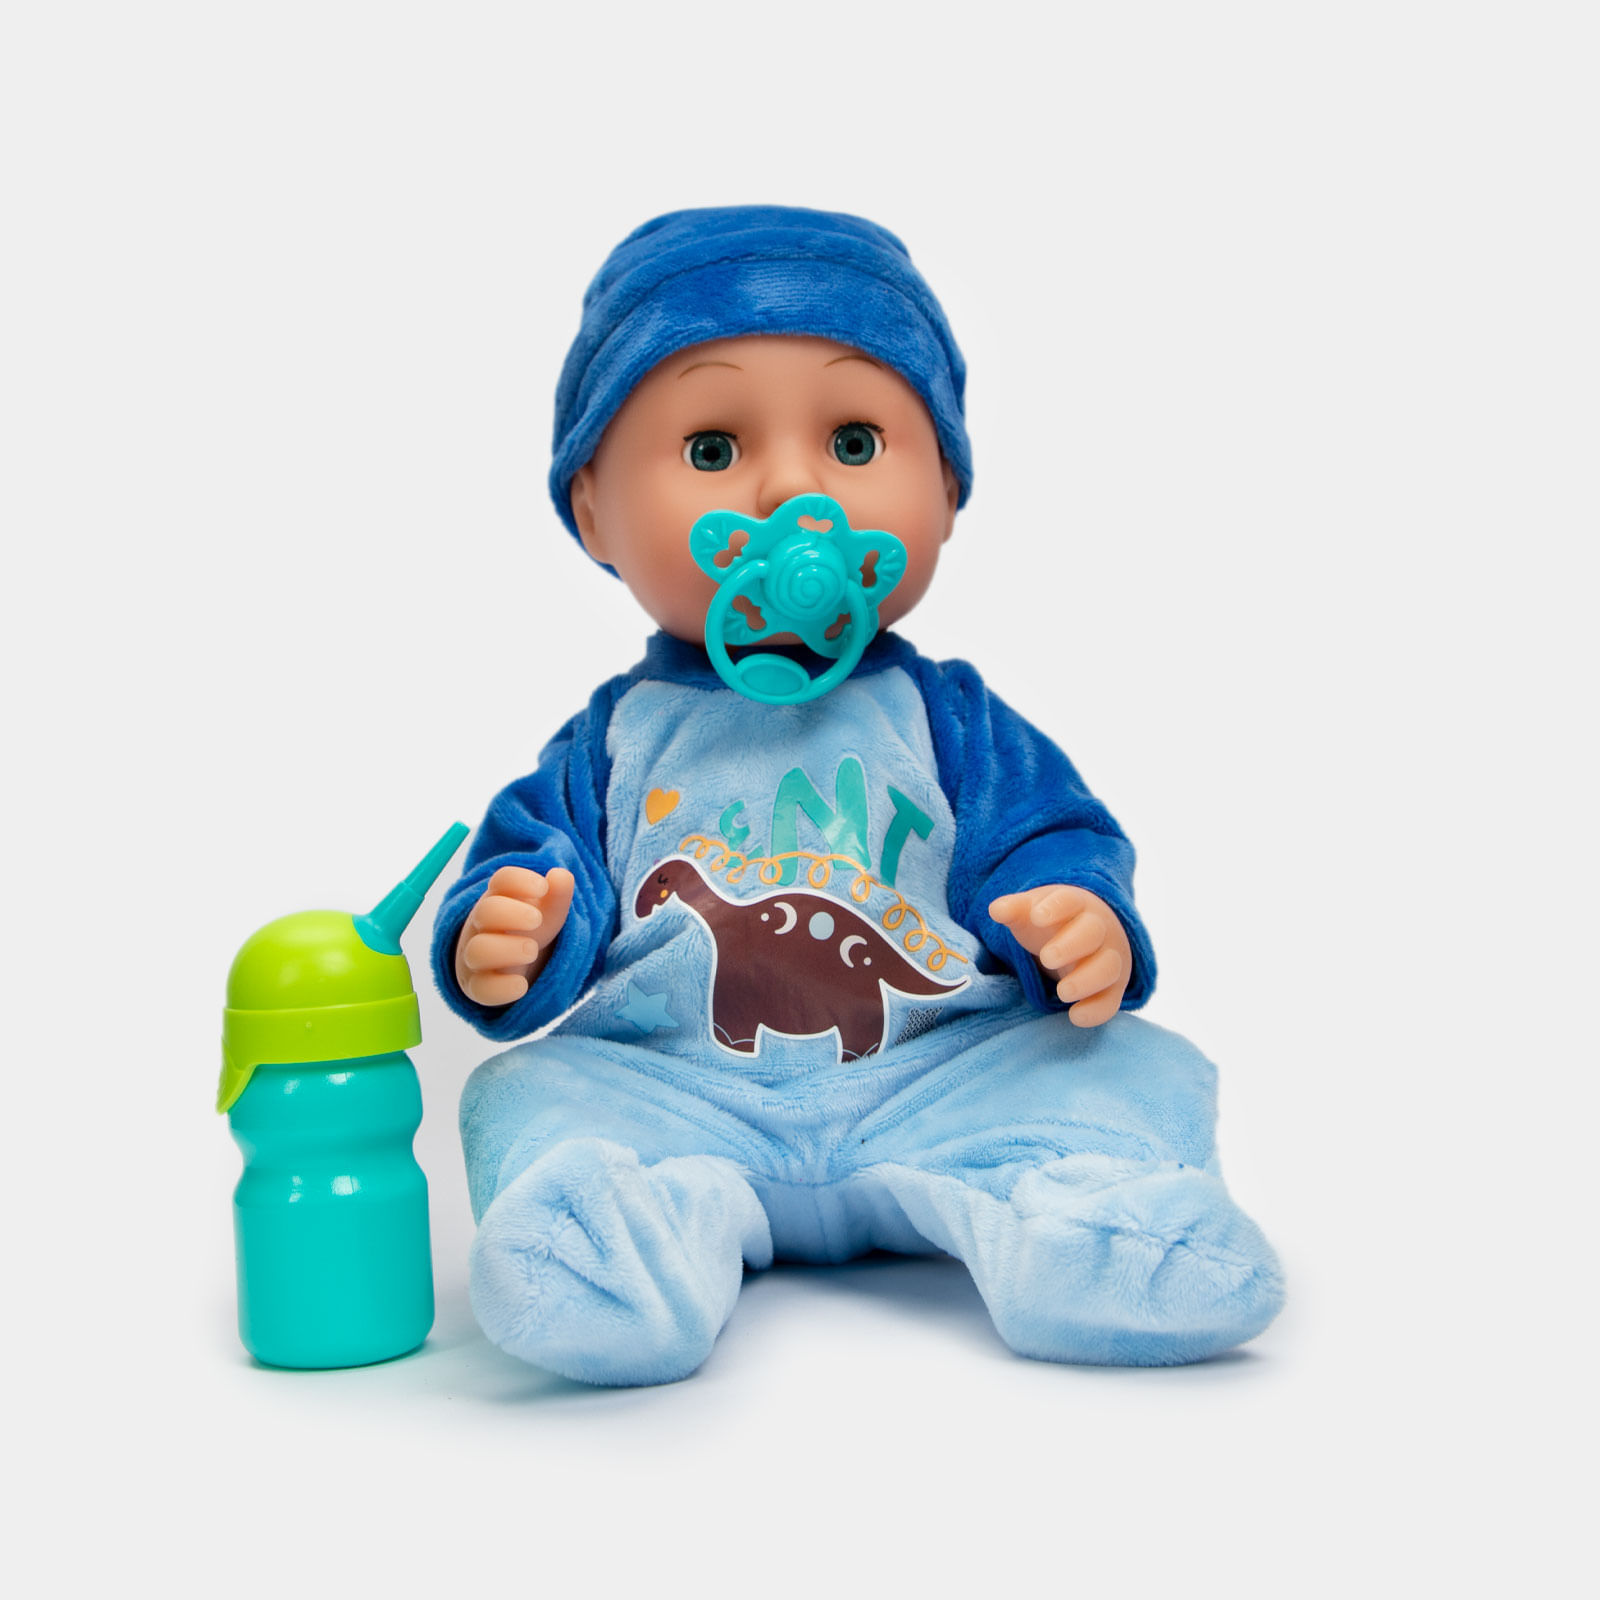 Bebé juguete de 36 con accesorios, y pijama enteriza